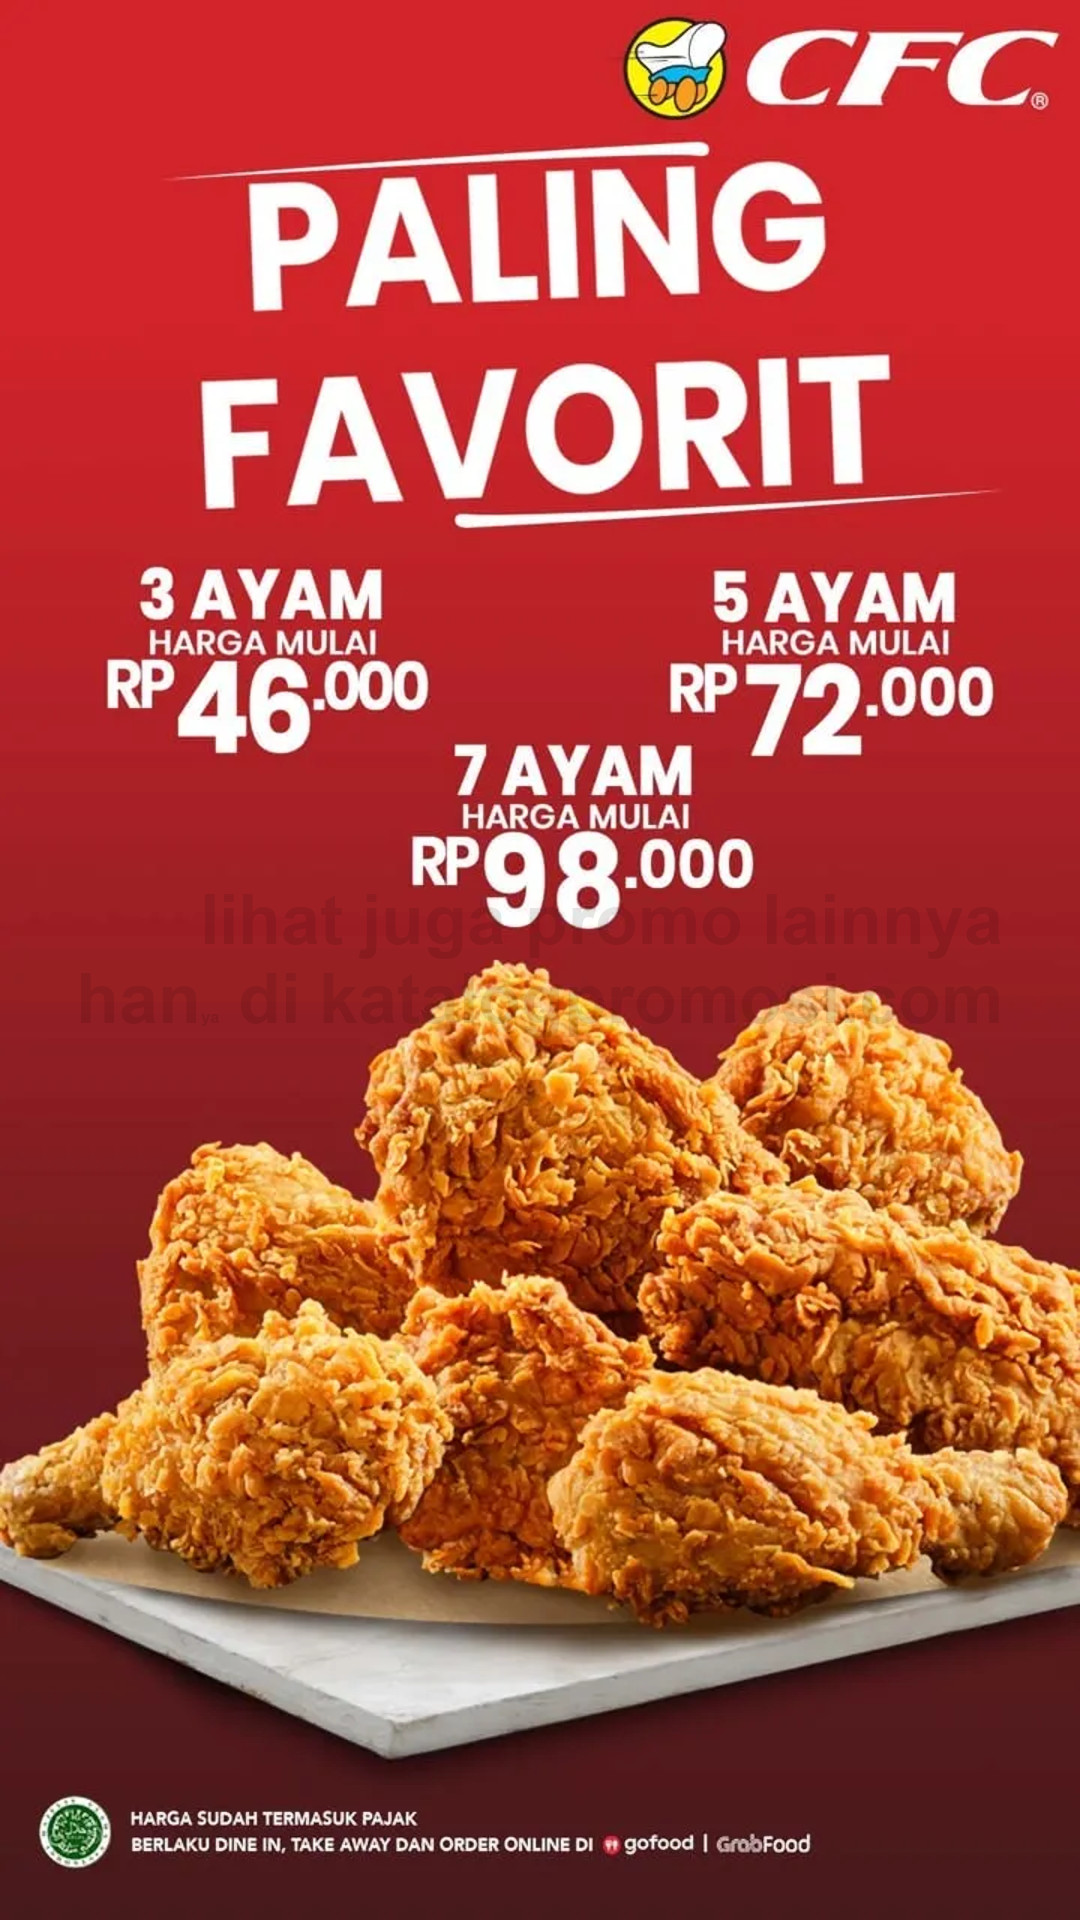 Promo CFC PALING FAVORIT - Paket 3, 5, atau 7 Ayam Dengan Harga mulai dari Rp 46.000